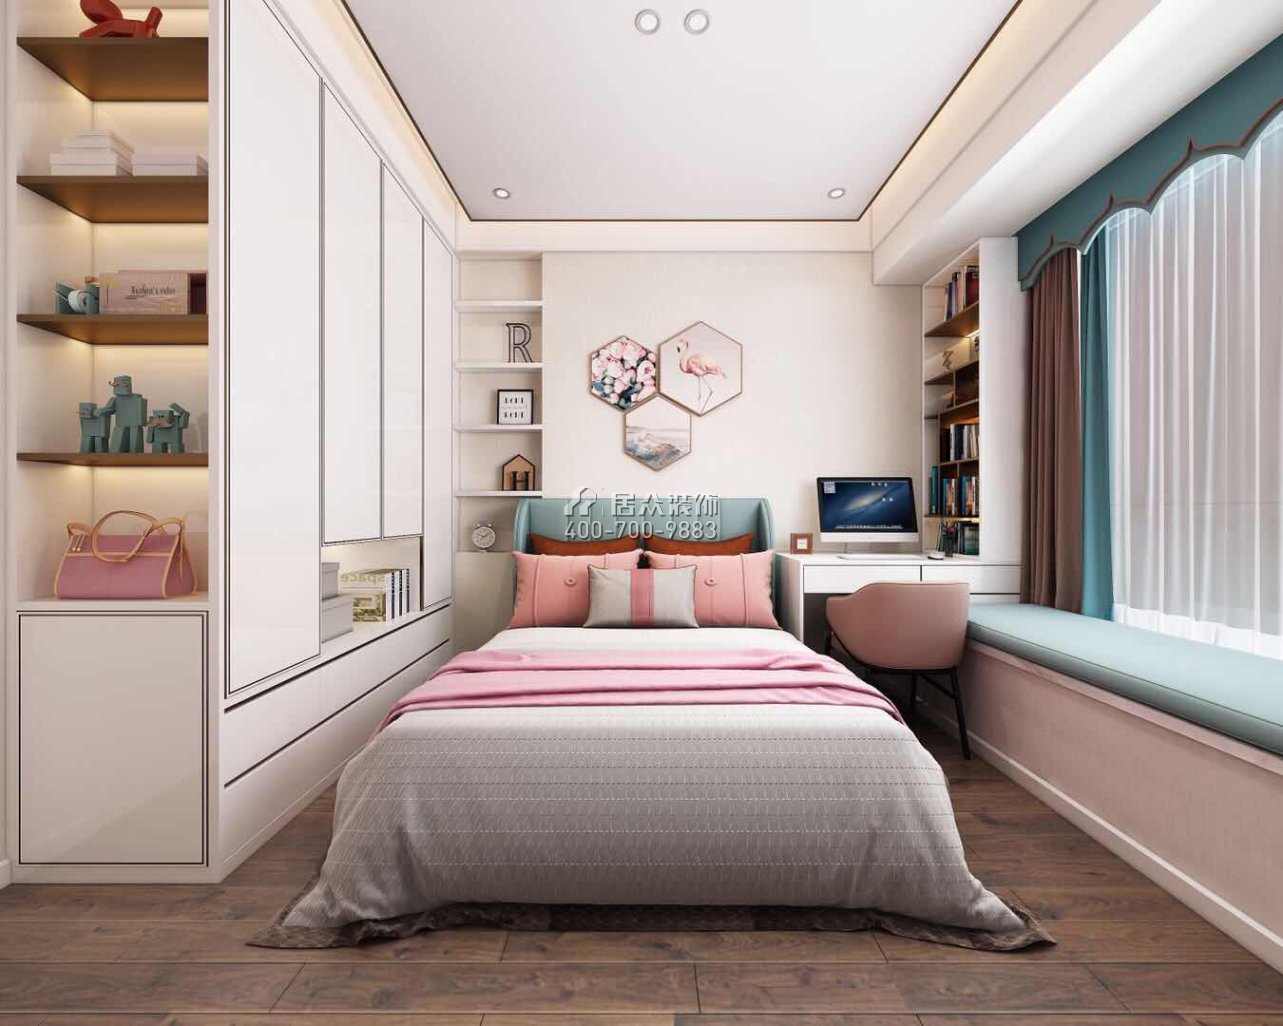 阳光粤海155平方米现代简约风格平层户型卧室装修效果图